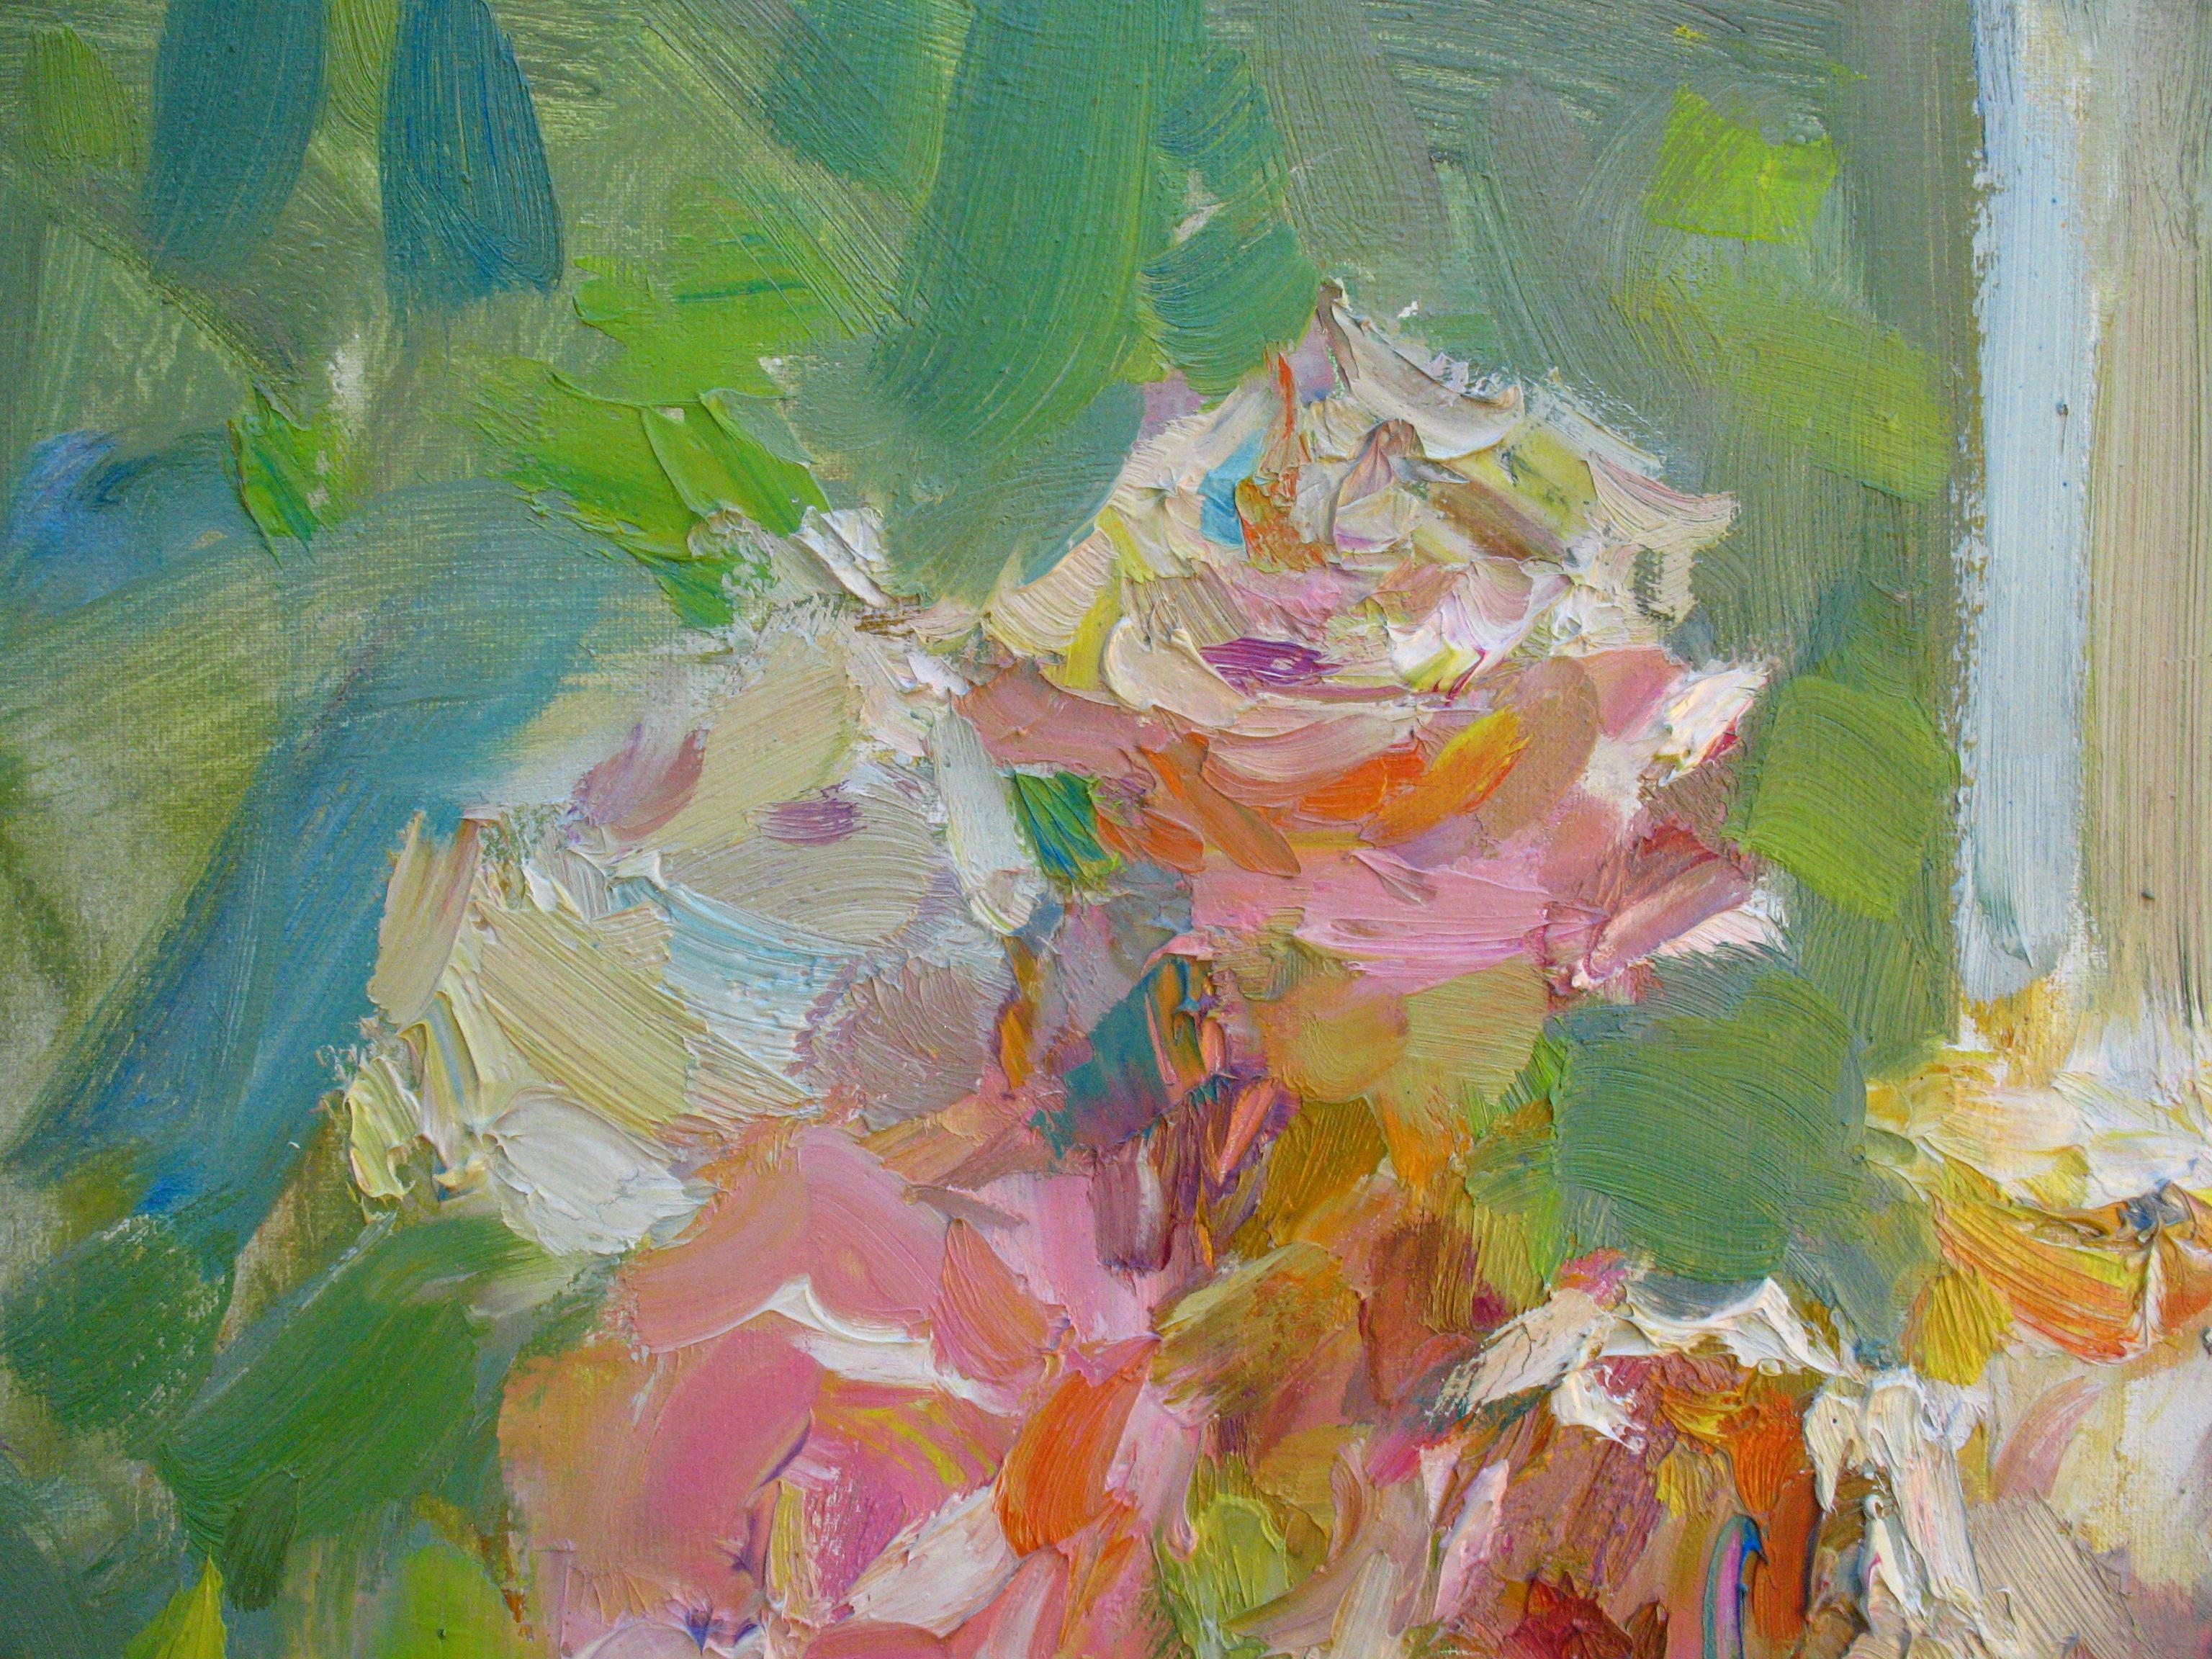 Nature morte dures - Peinture à l'huile sur toile, couleur vert, jaune, orange, bleu et rose - Impressionnisme Painting par Dmitriev Alexey Olegovich